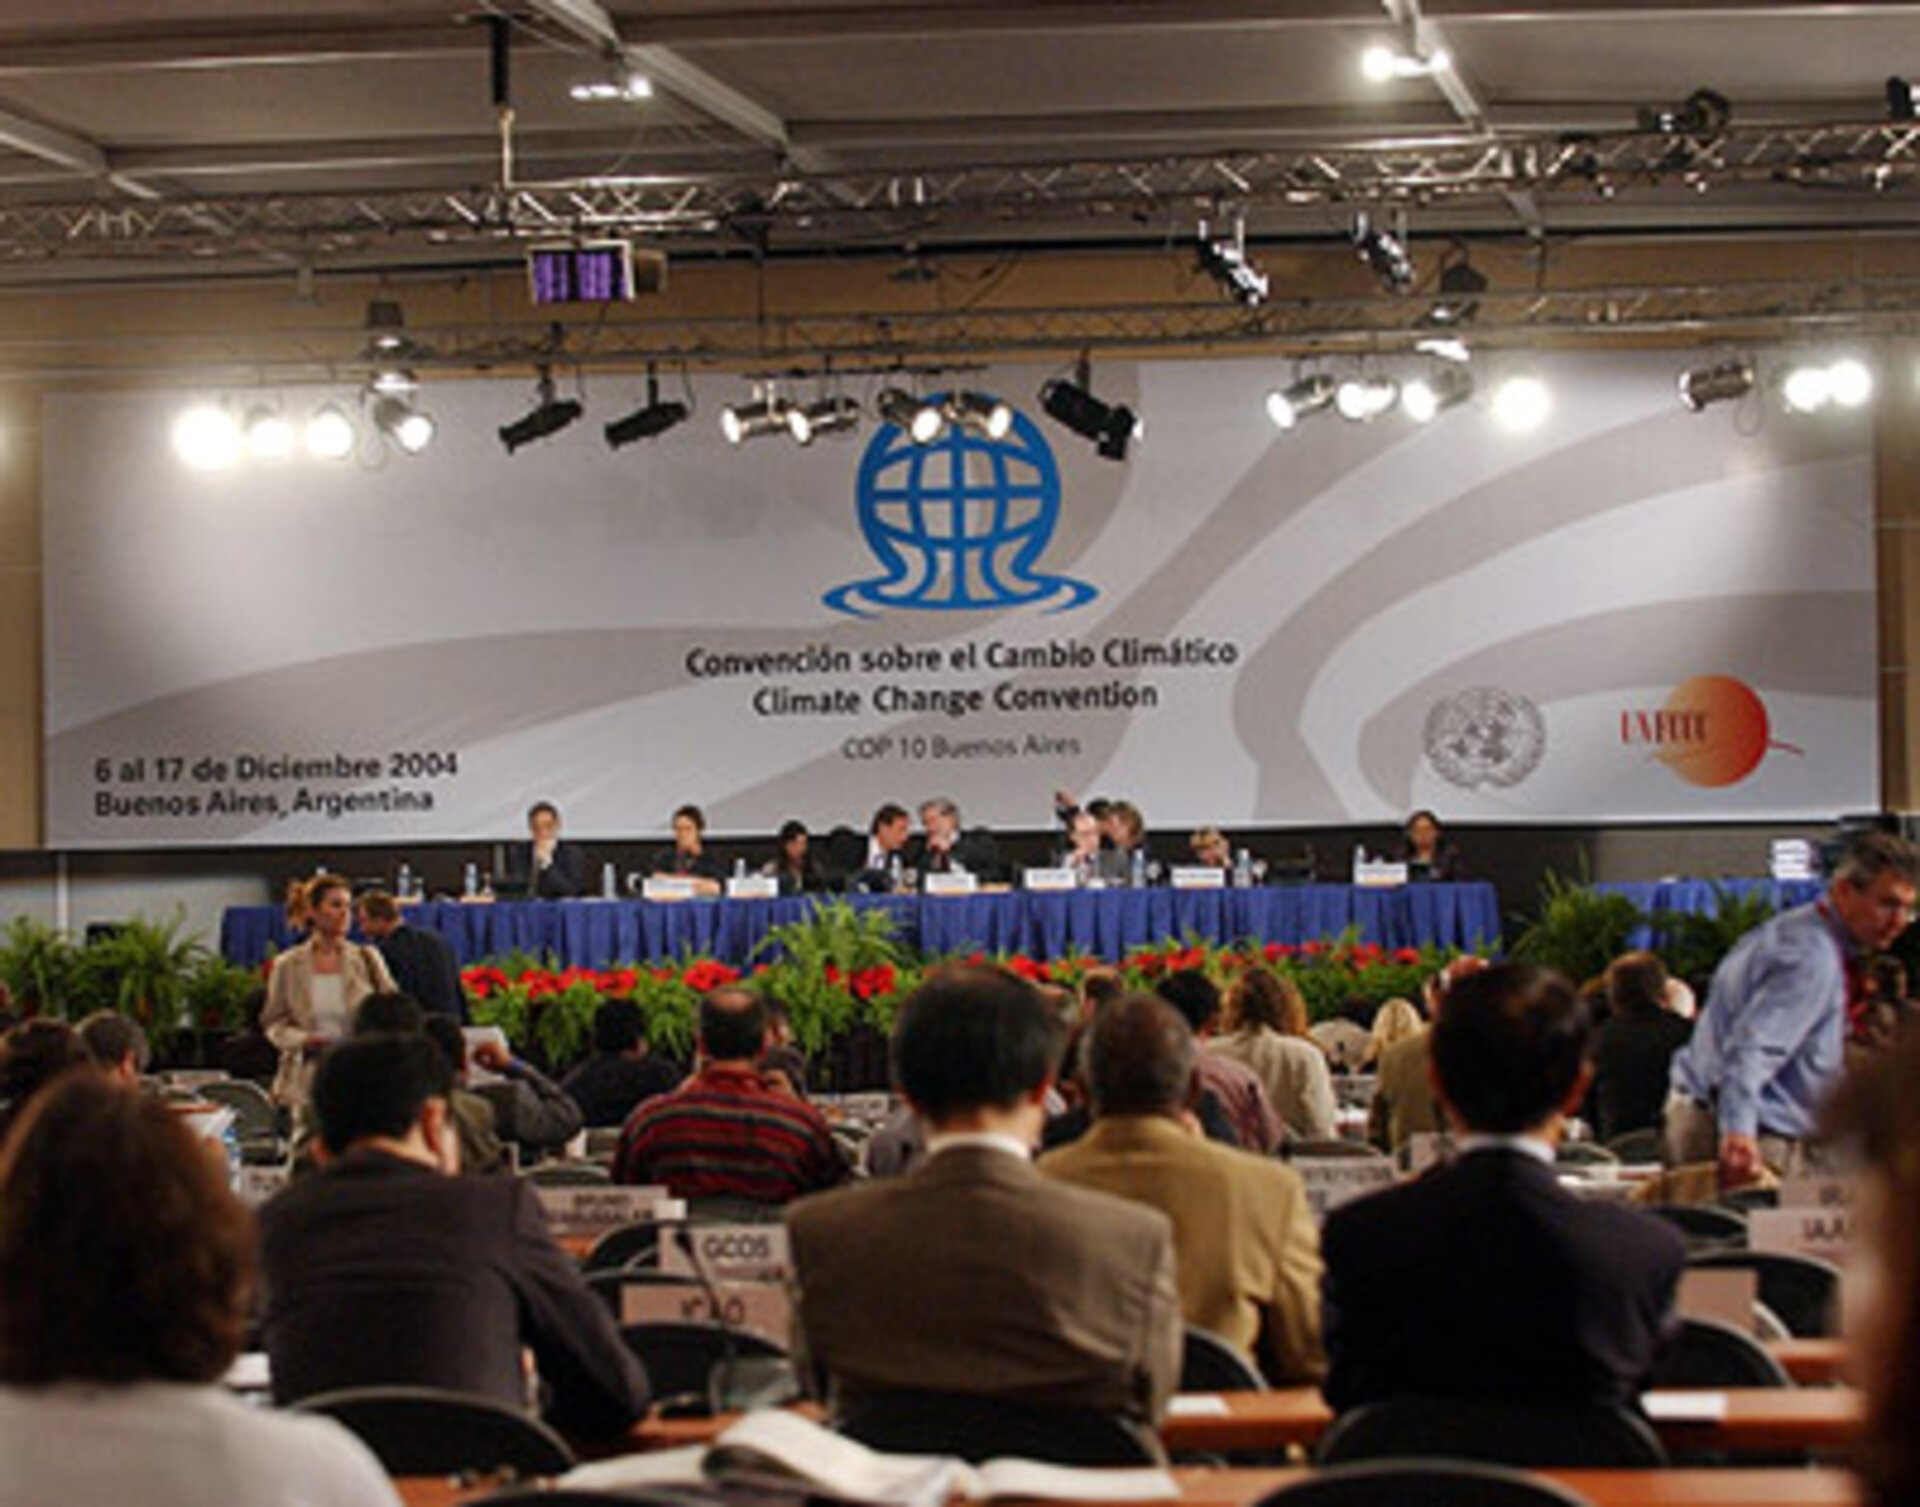 COP 10 delegates